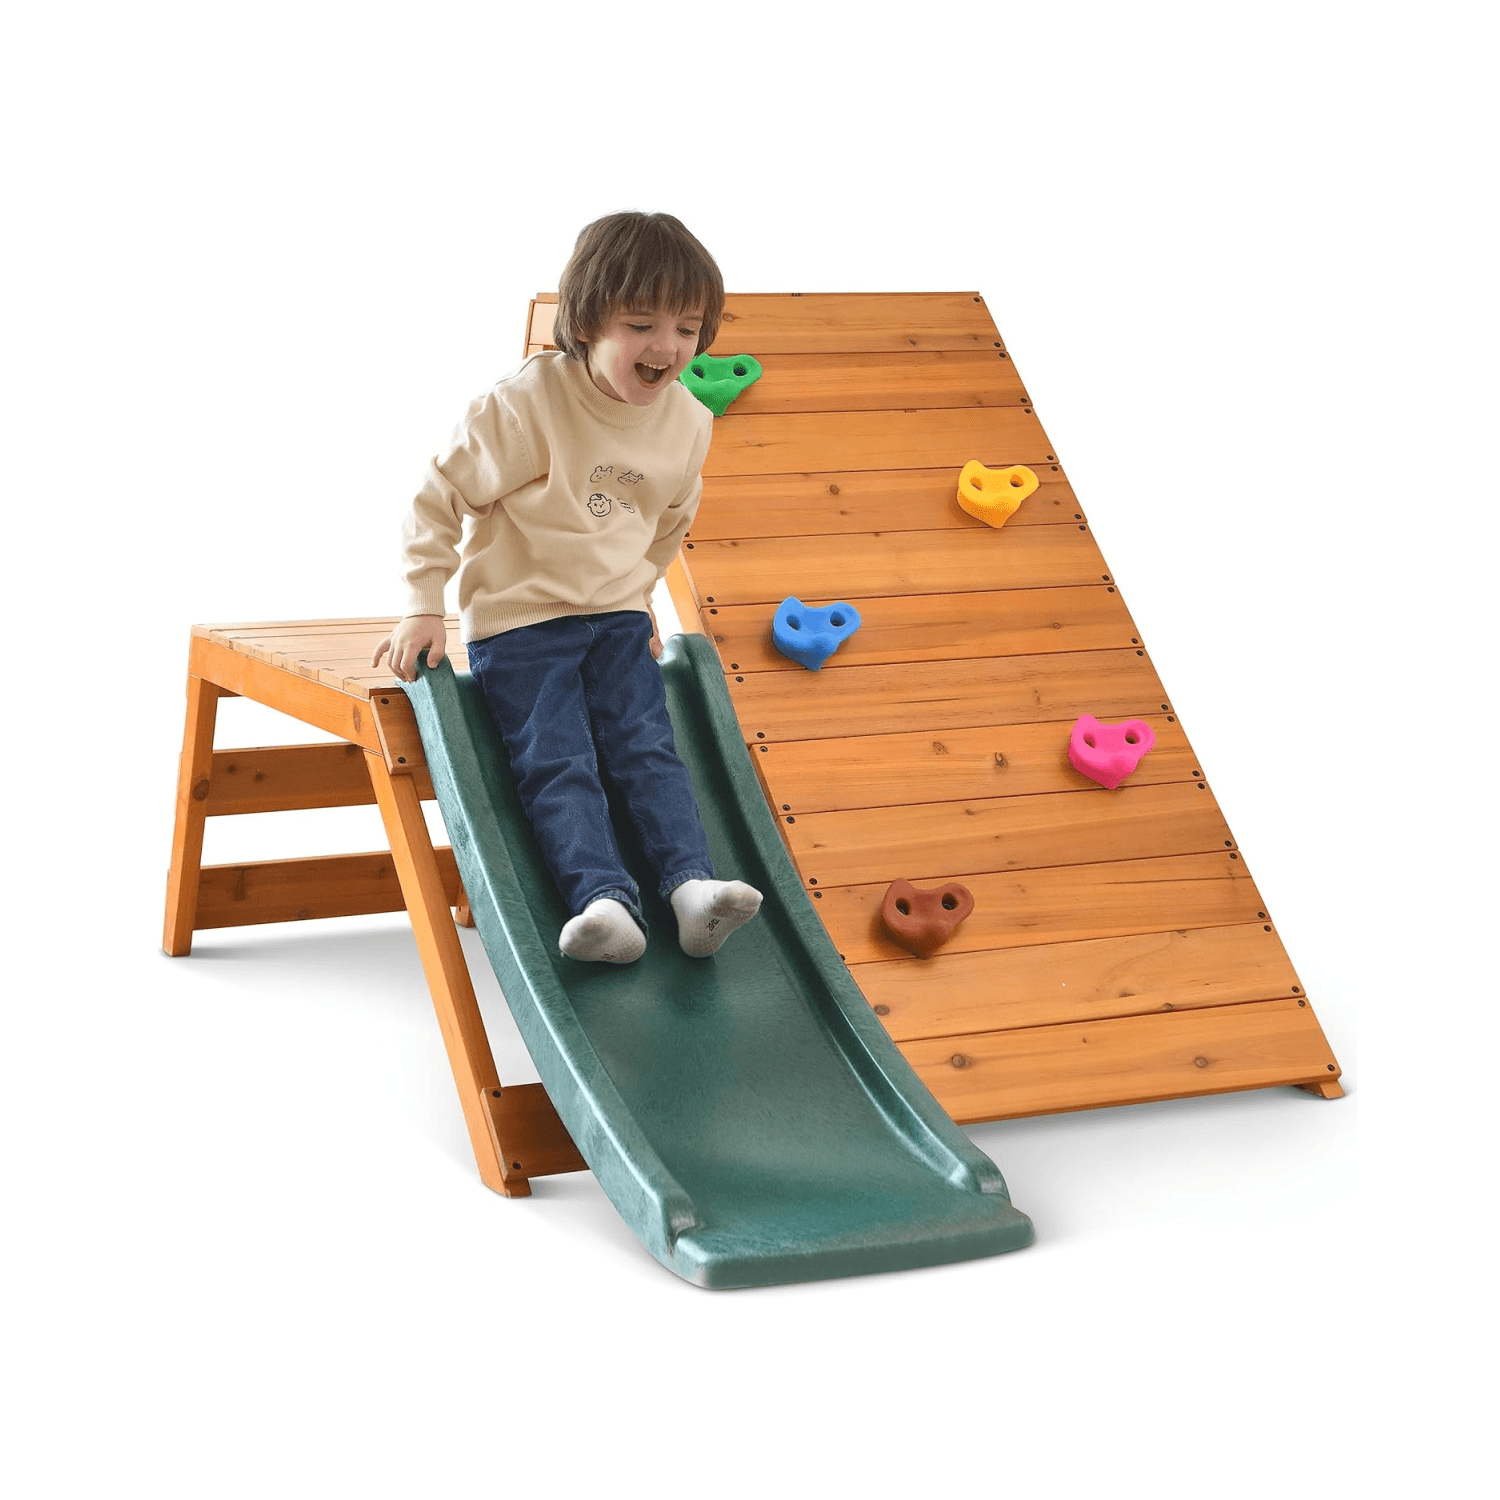 Montessori avenlur indoor outdoor playset green slide